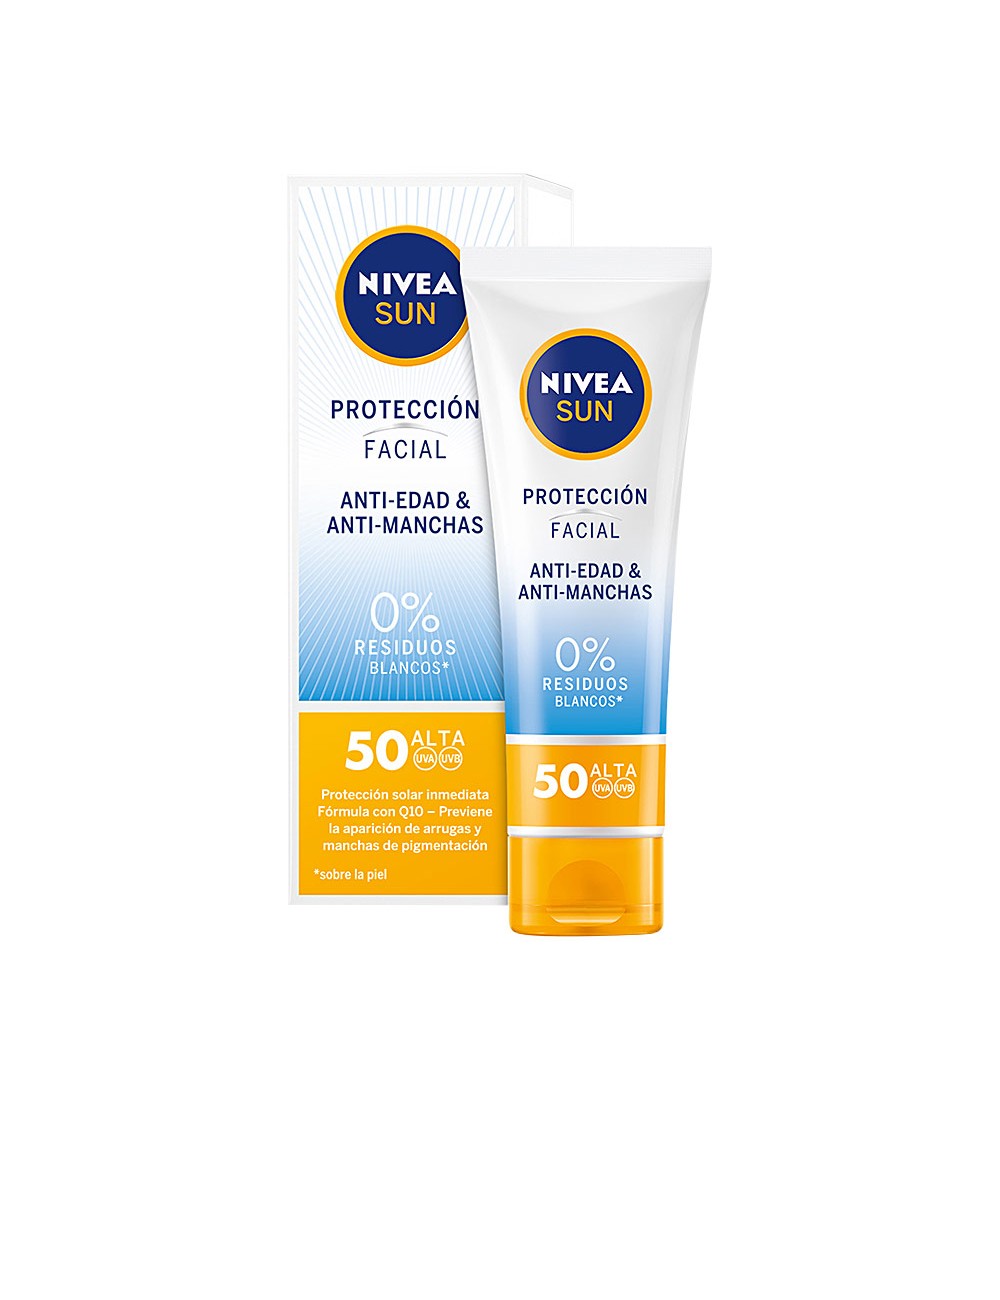 Crème solaire visage anti-tâches & anti-âge SPF50 50 ml NE100135